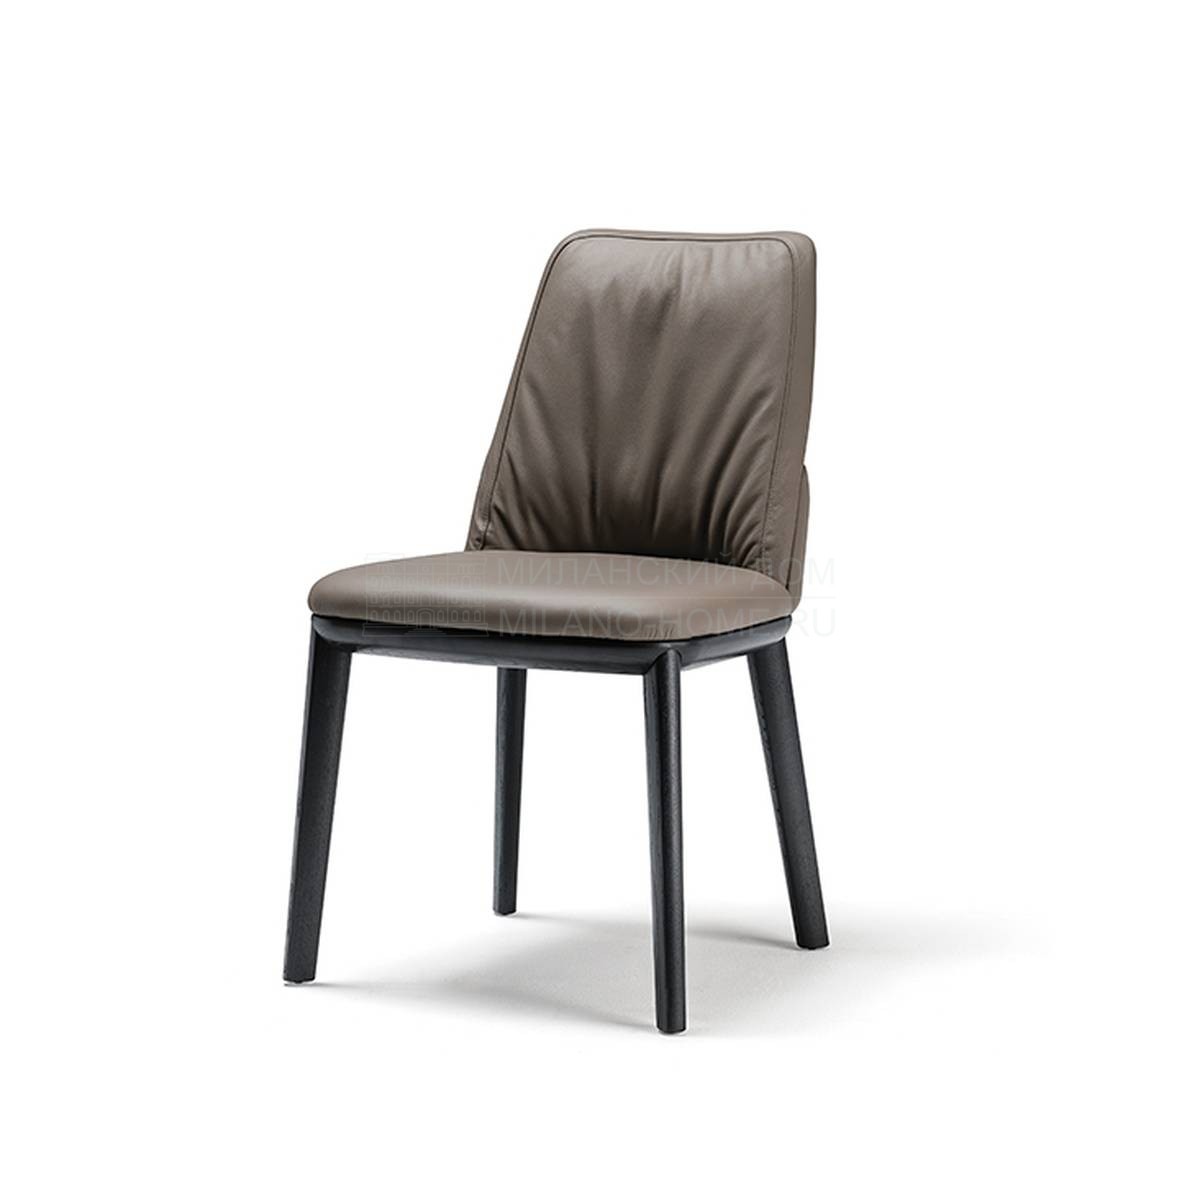 Кожаный стул Belinda chair из Италии фабрики CATTELAN ITALIA